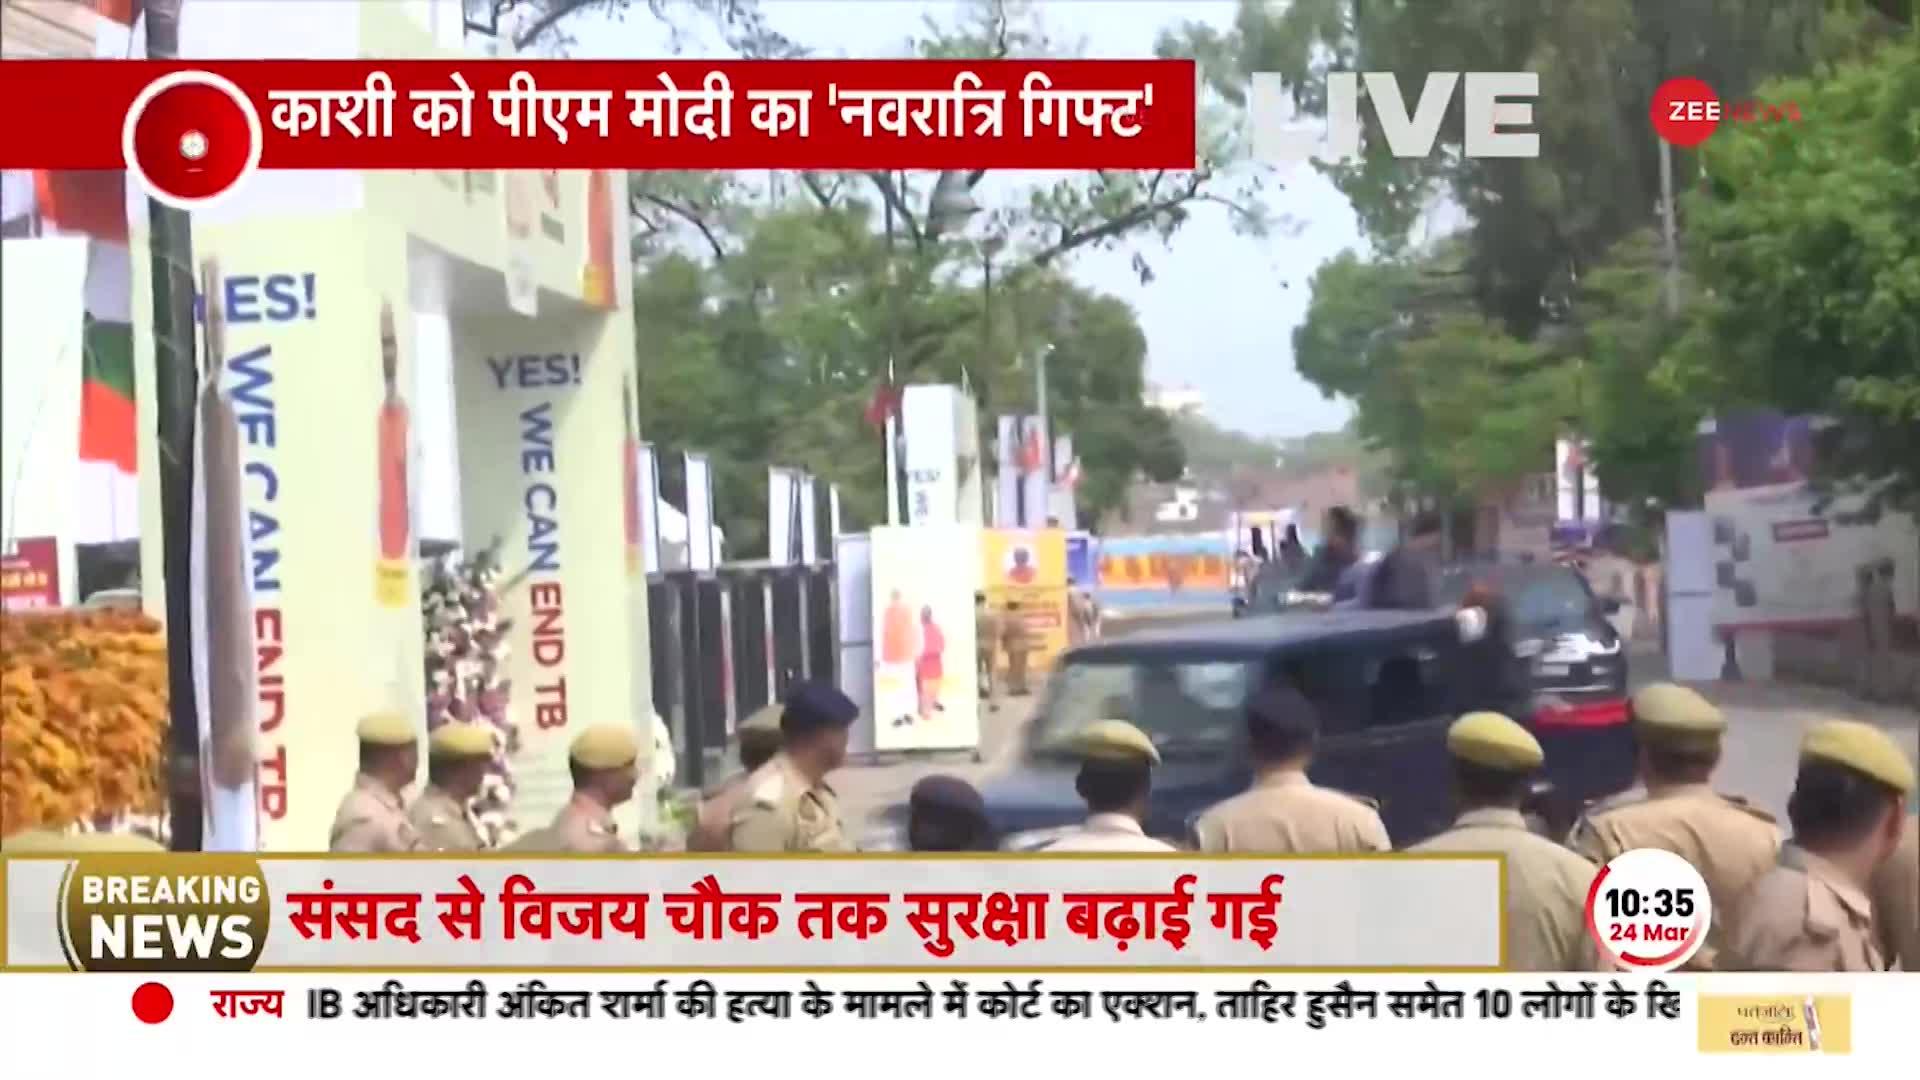 PM Modi in Varanasi: शिव नगरी पहुंचा प्रधानमंत्री का काफिला, BJP कार्यकर्ताओं ने किया भव्य स्वागत